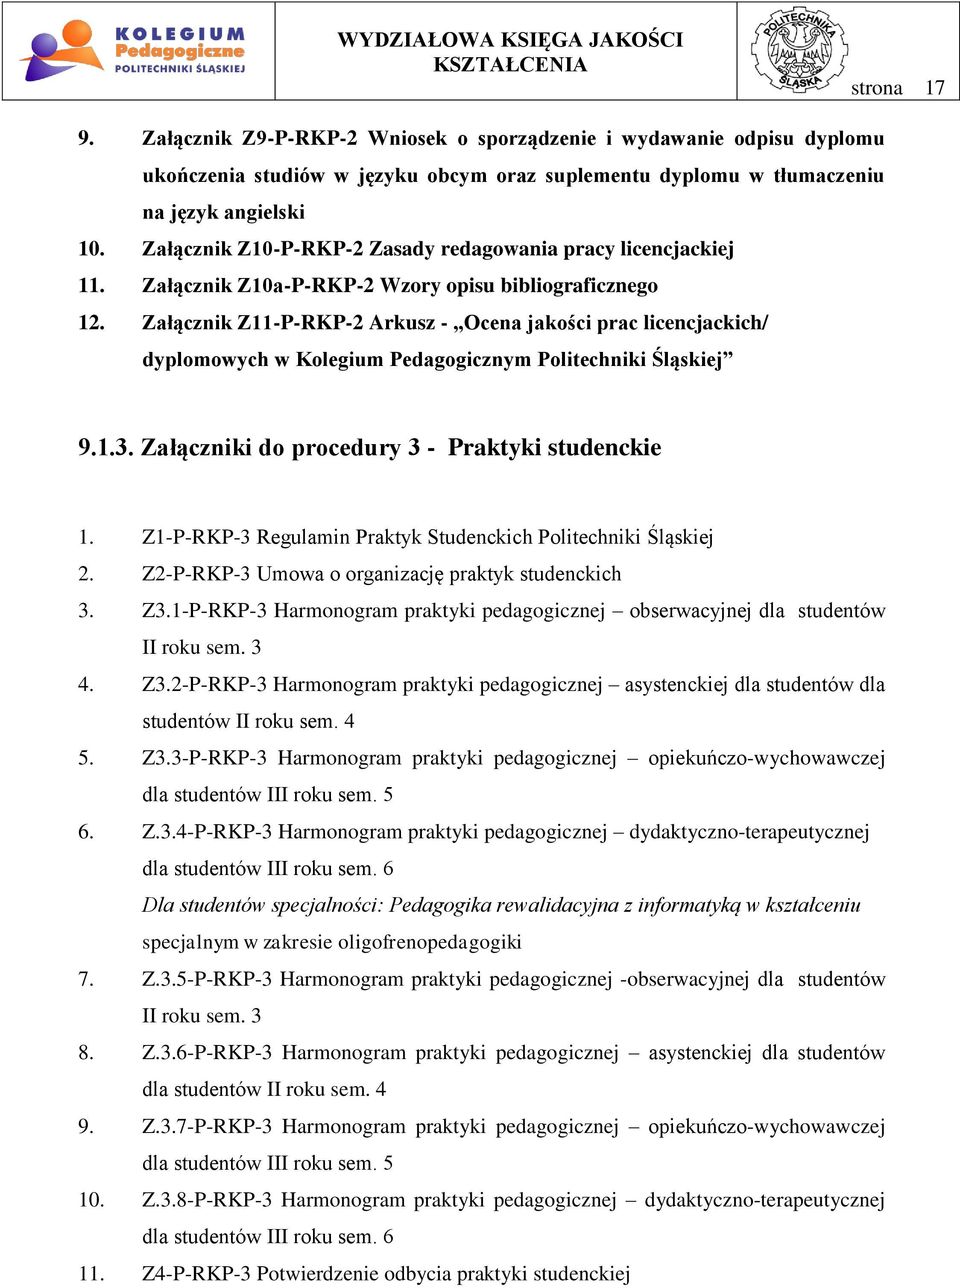 Załącznik Z11-P-RKP-2 Arkusz - Ocena jakości prac licencjackich/ dyplomowych w Kolegium Pedagogicznym Politechniki Śląskiej 9.1.3. Załączniki do procedury 3 - Praktyki studenckie 1.